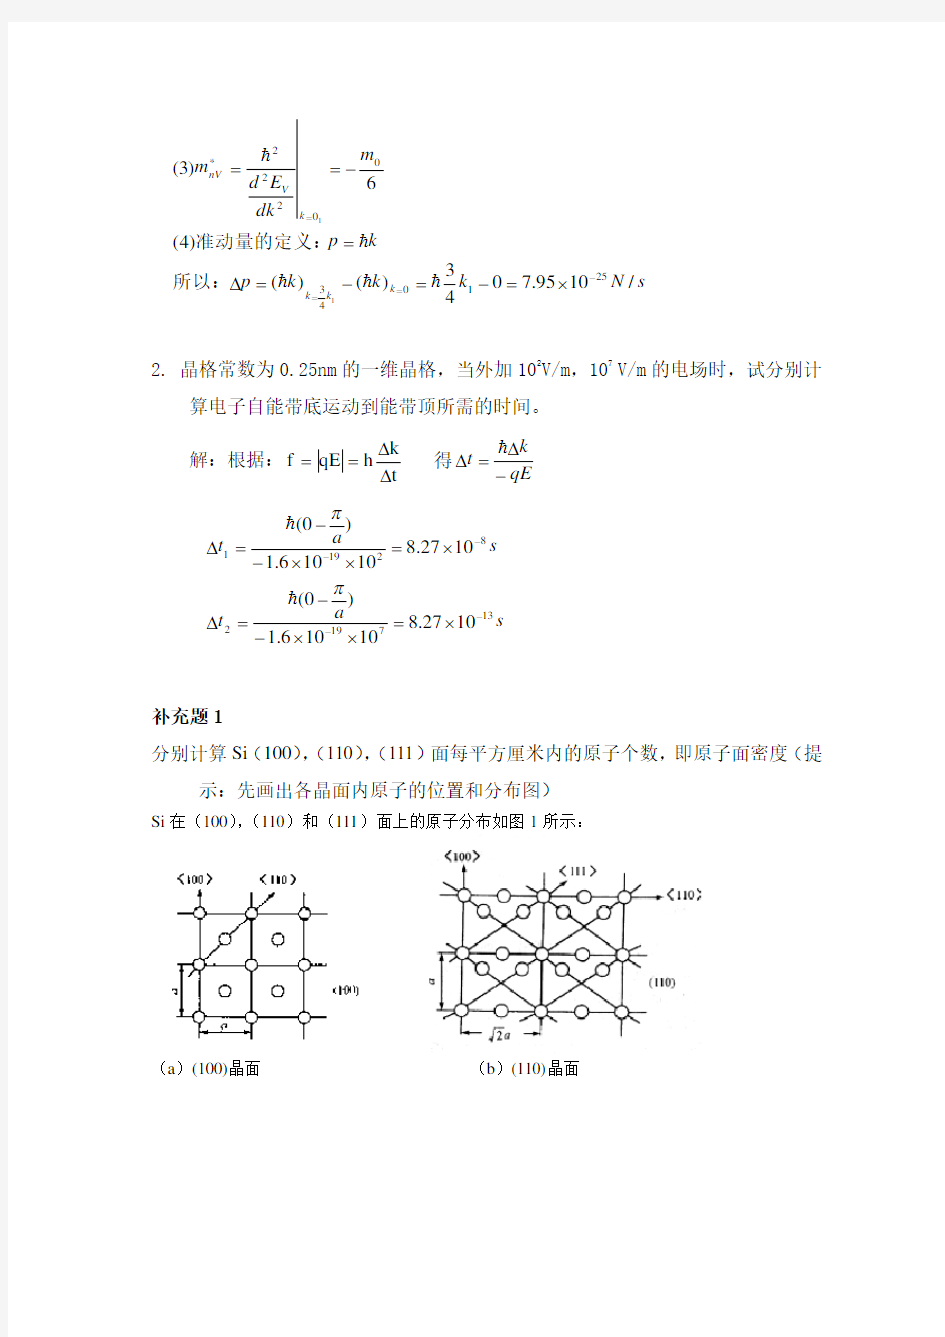 半导体物理学(刘恩科第七版)半导体物理学课本习题解